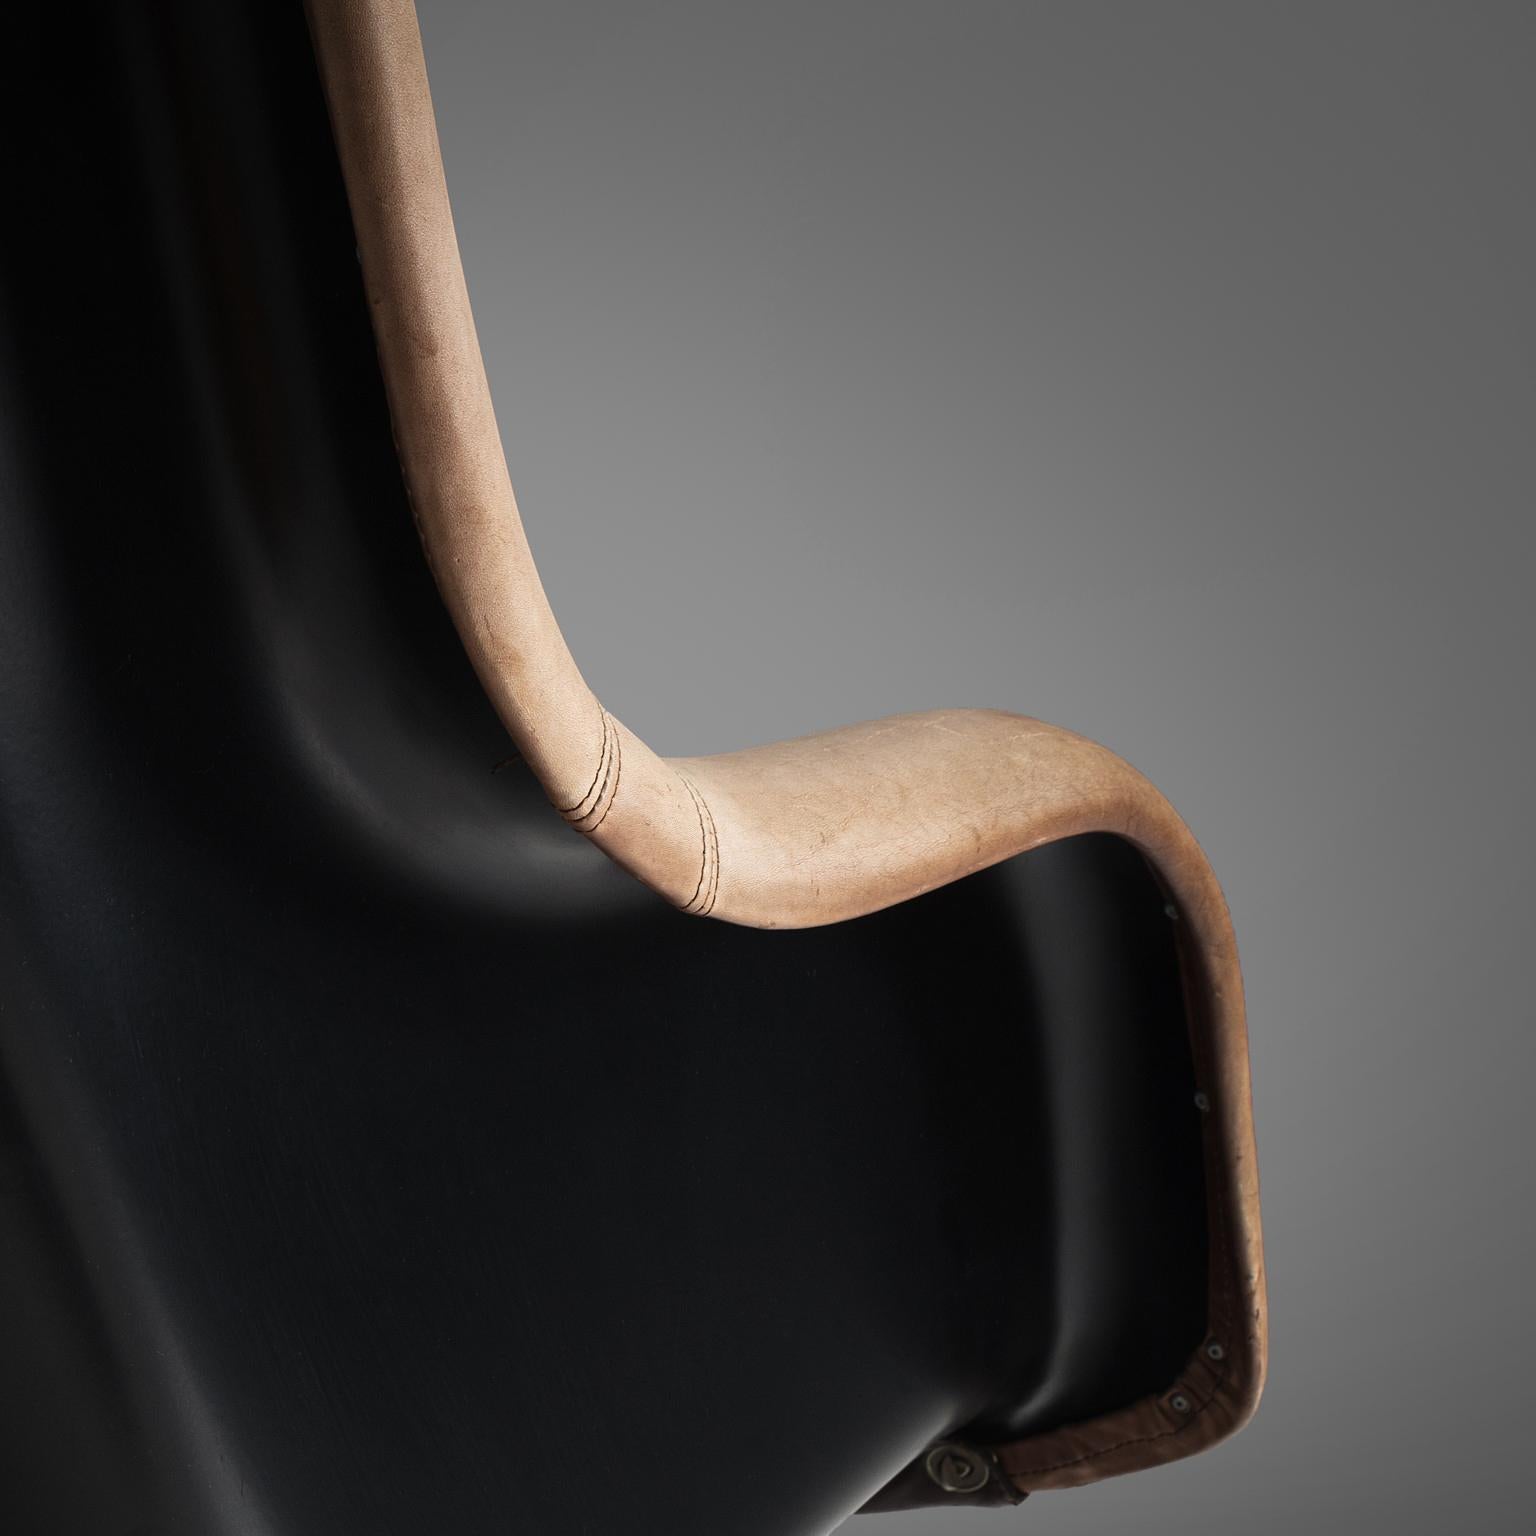 Yrjö Kukkapuro 'Karuselli' Lounge Chair in Brown Leather Upholstery For Sale 1